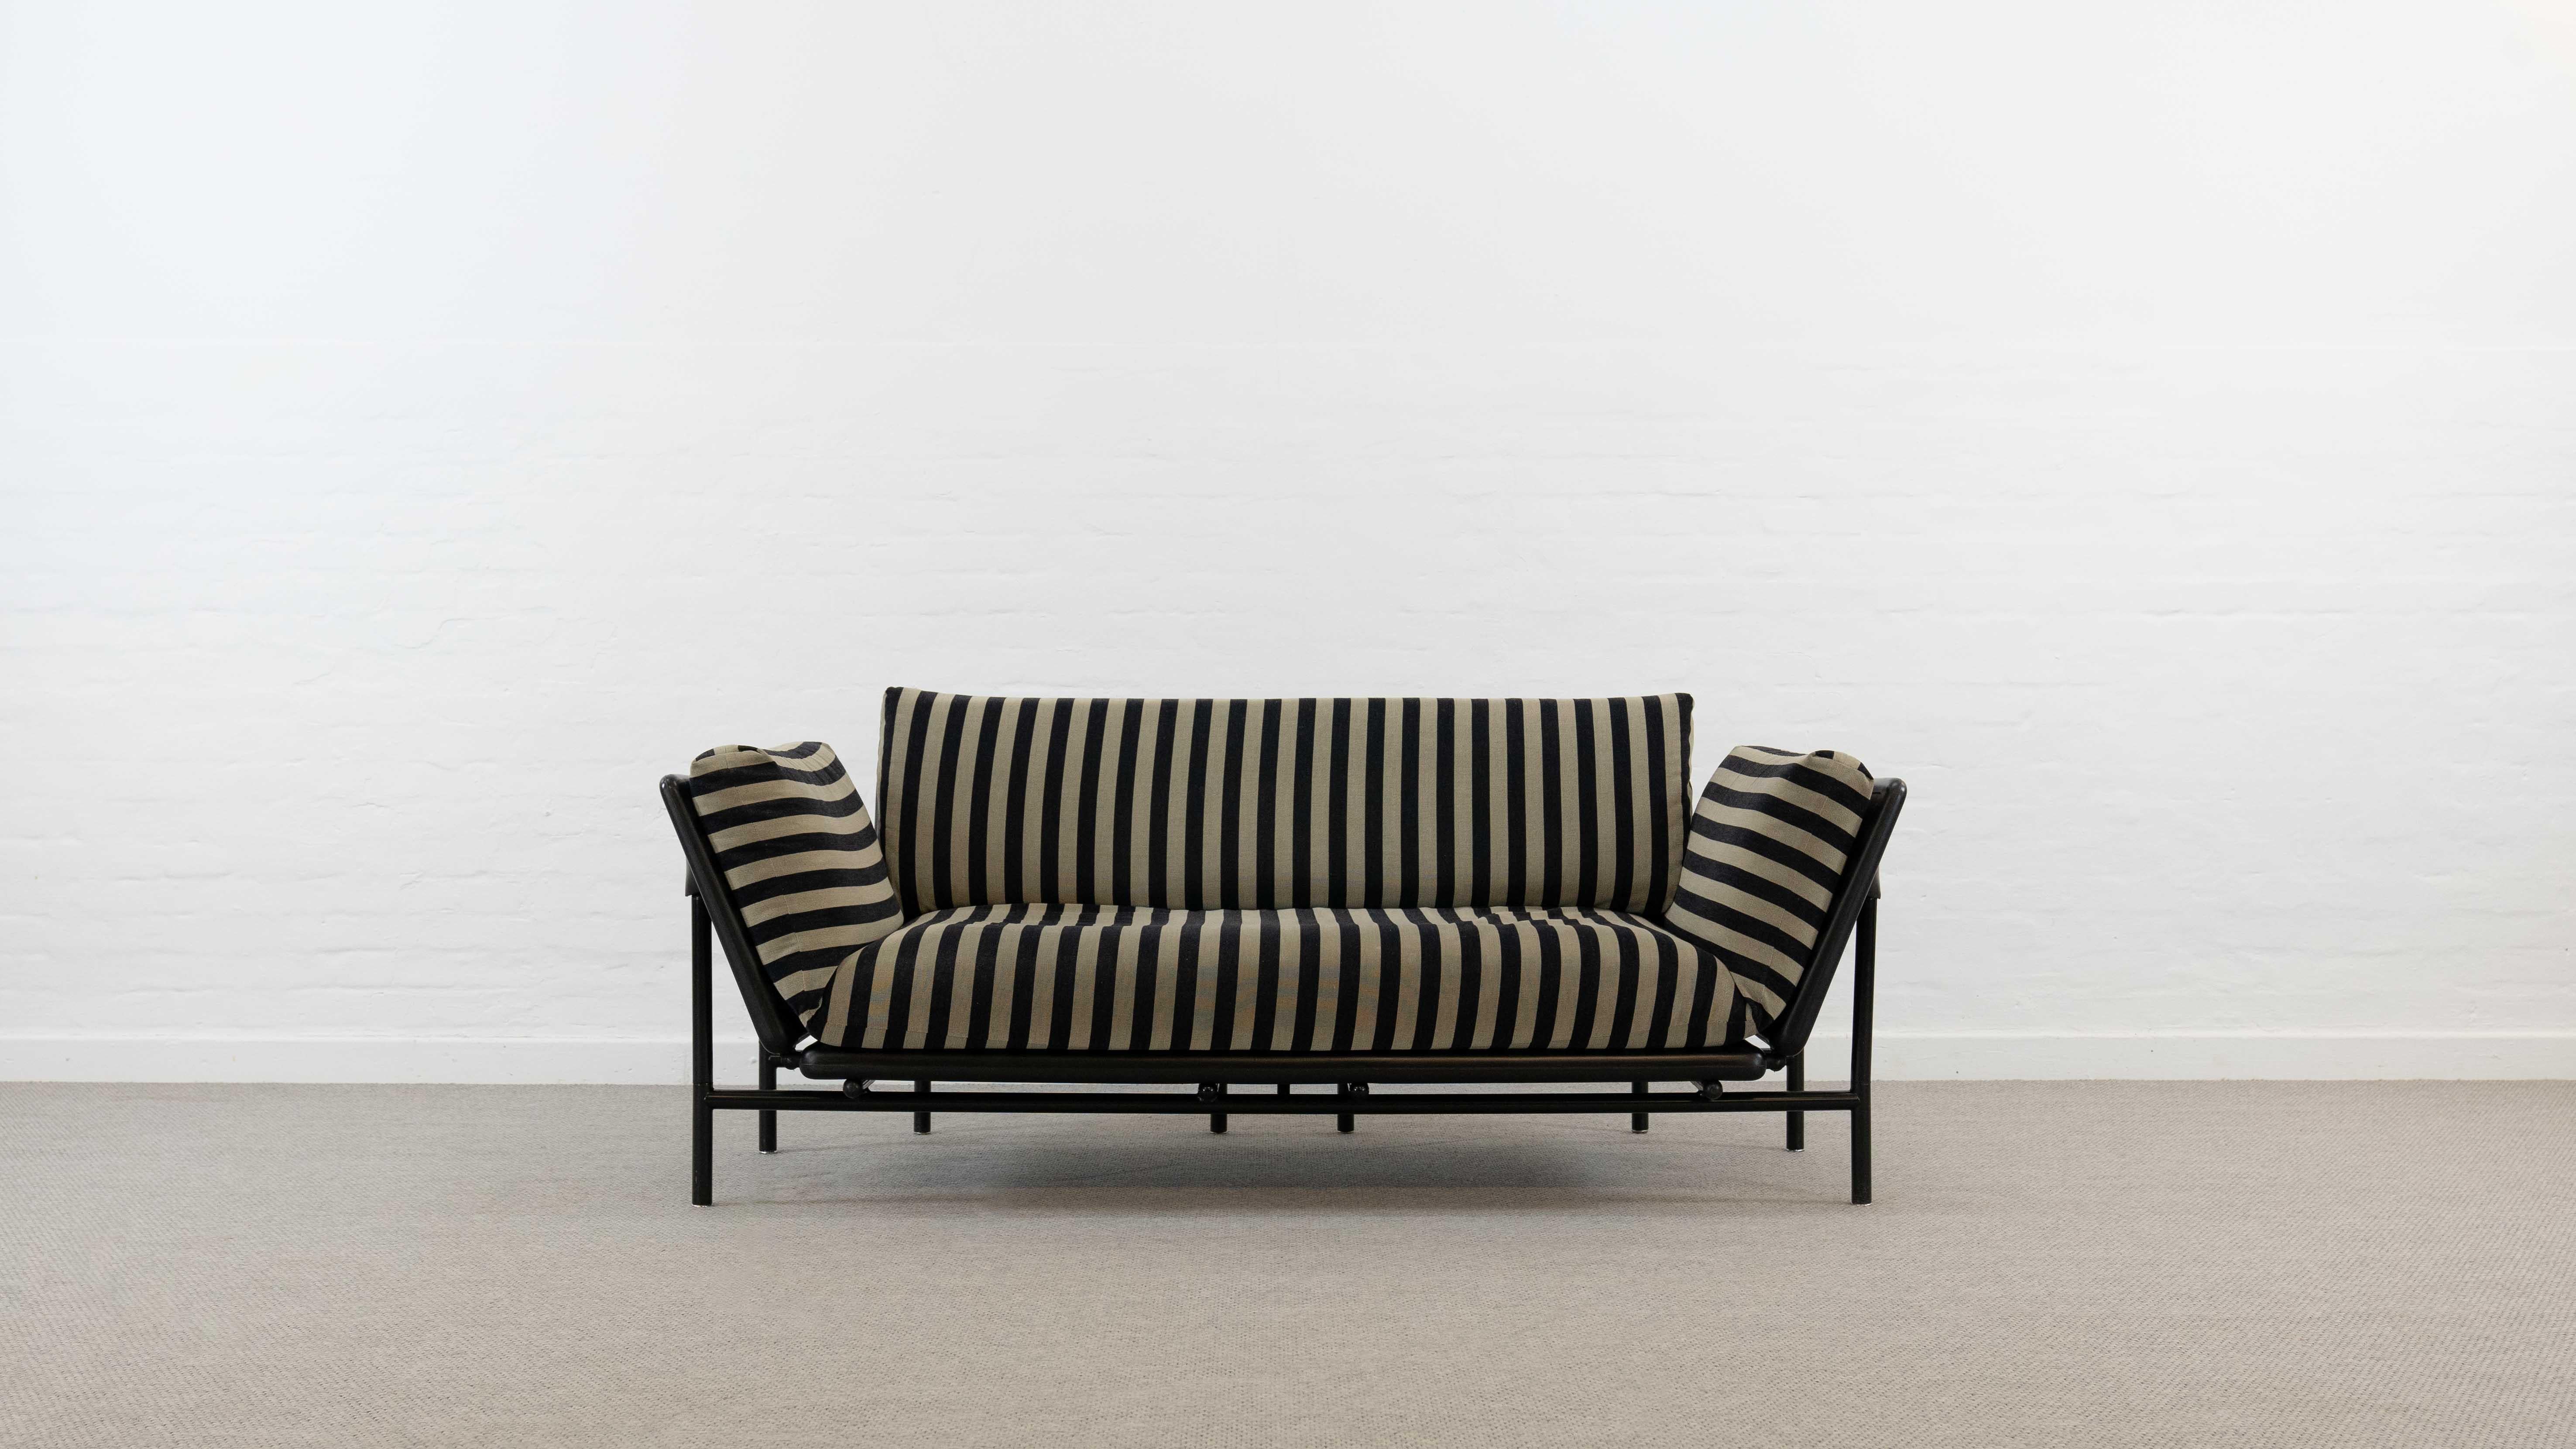 Rataplan Sofa / Daybed in grau-schwarz gestreiften Stoffen, entworfen von Roberto Tapinassi für Dema, Italien in den 1980er Jahren. Beide Armlehnen können abgesenkt werden, so dass eine horizontale Liegefläche entsteht. Die untere Sofakonstruktion